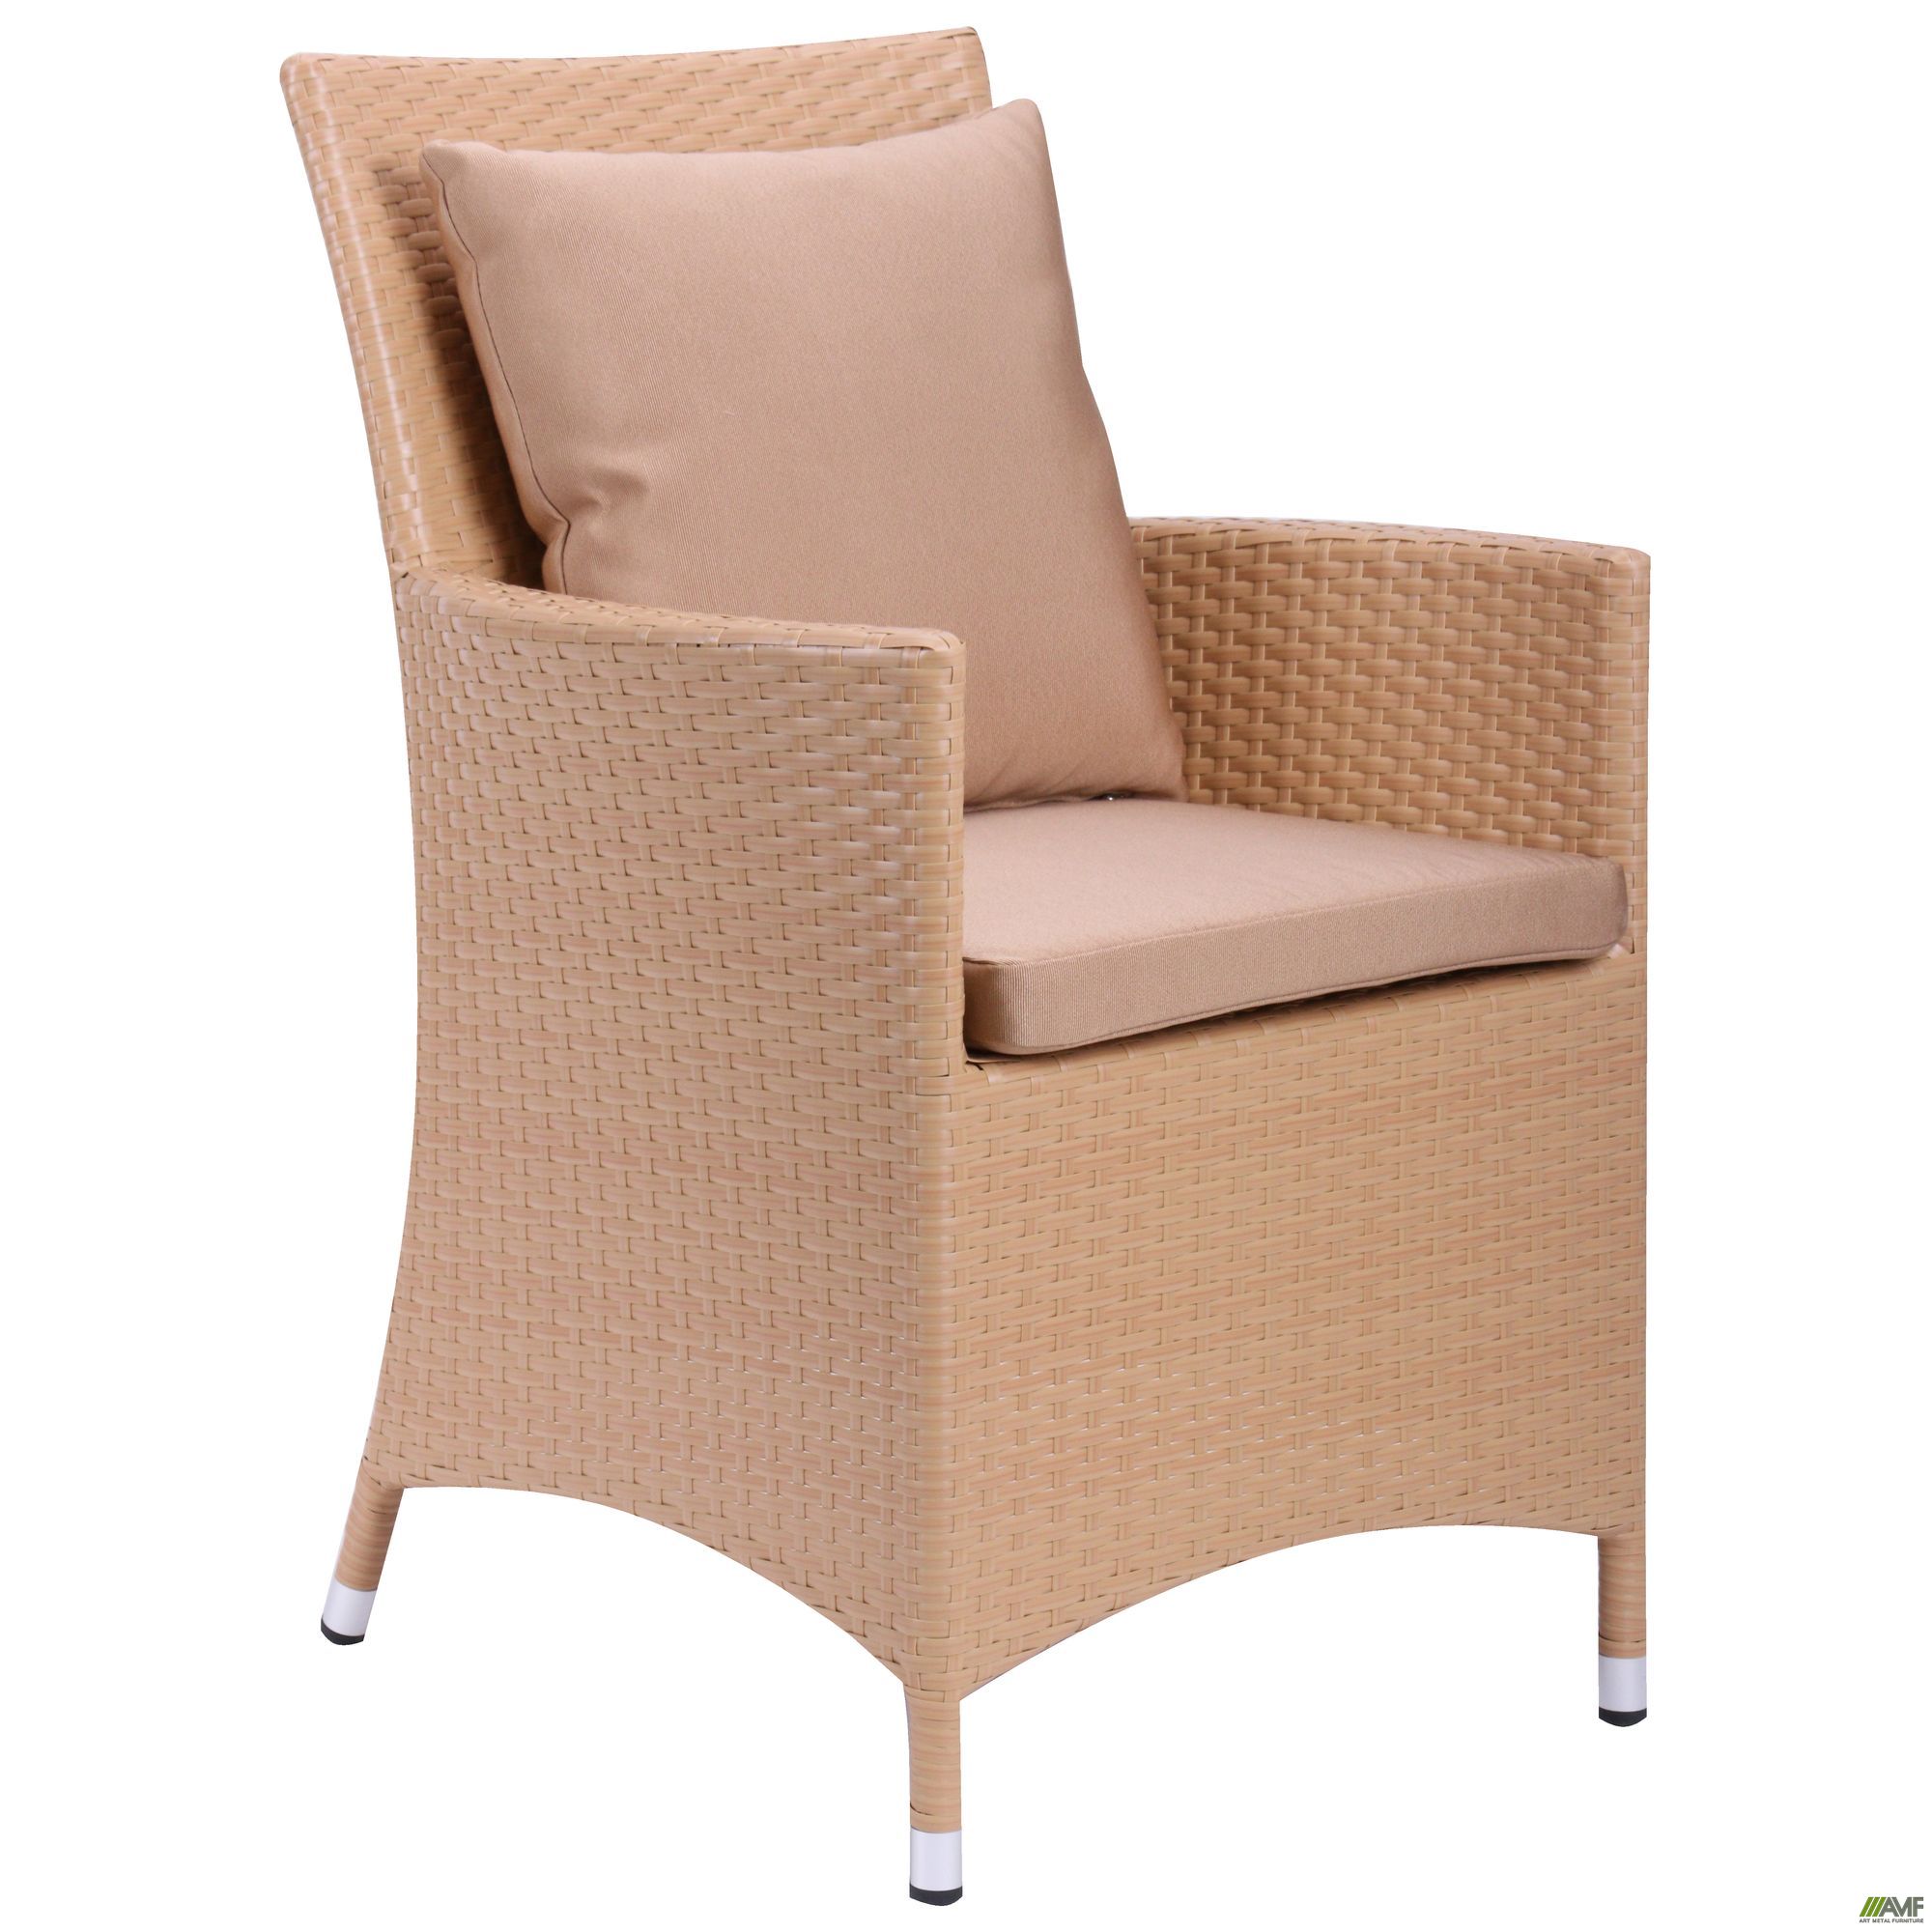 Фото 8 - Комплект мебели Samana-6 из ротанга Elit (SC-8849) Sand AM3041 ткань A14203 